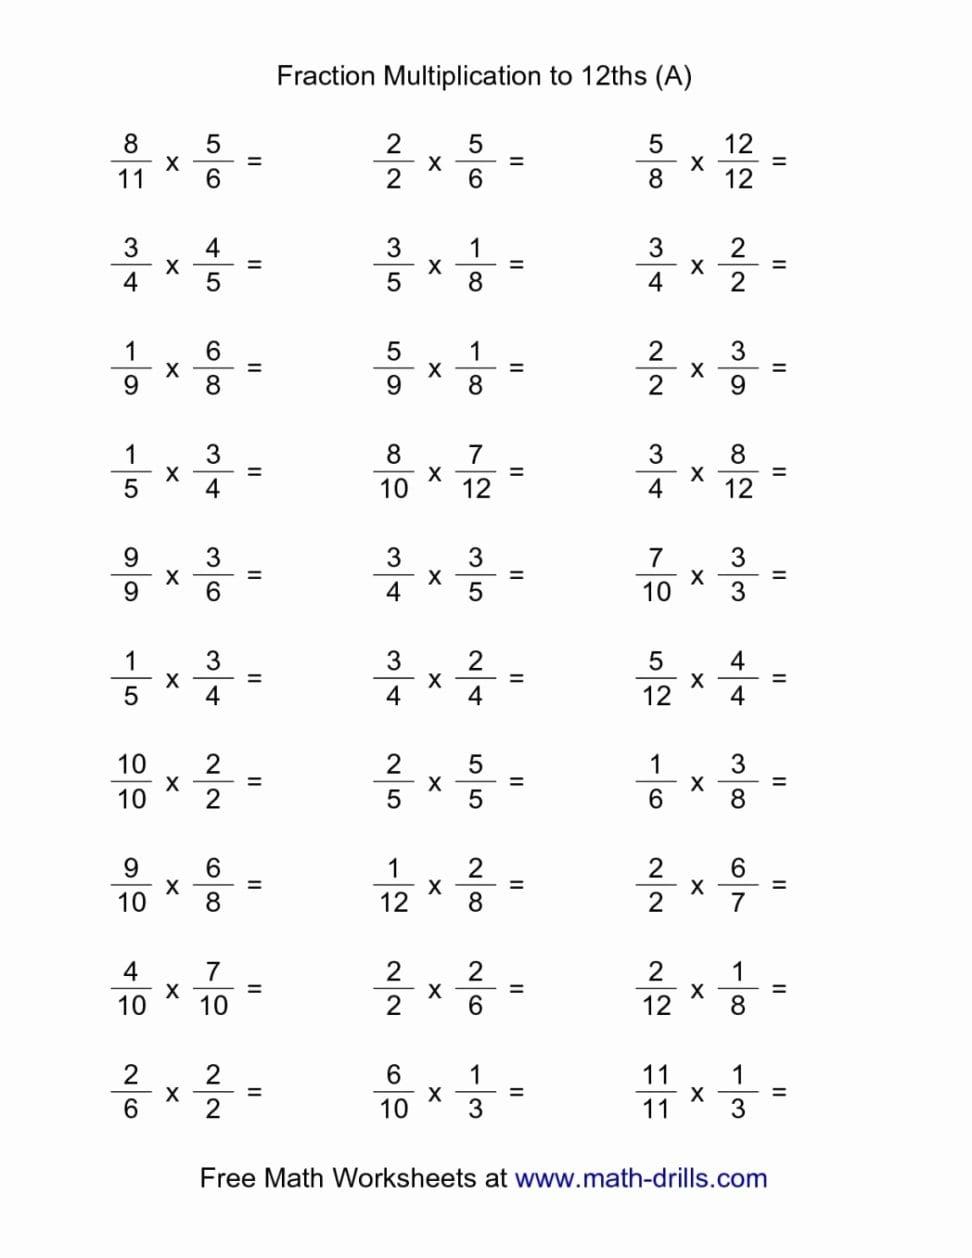 17 Free Printable Sixth Grade Math Worksheets – Cgcprojects – Resume Or Printable 6Th Grade Math Worksheets